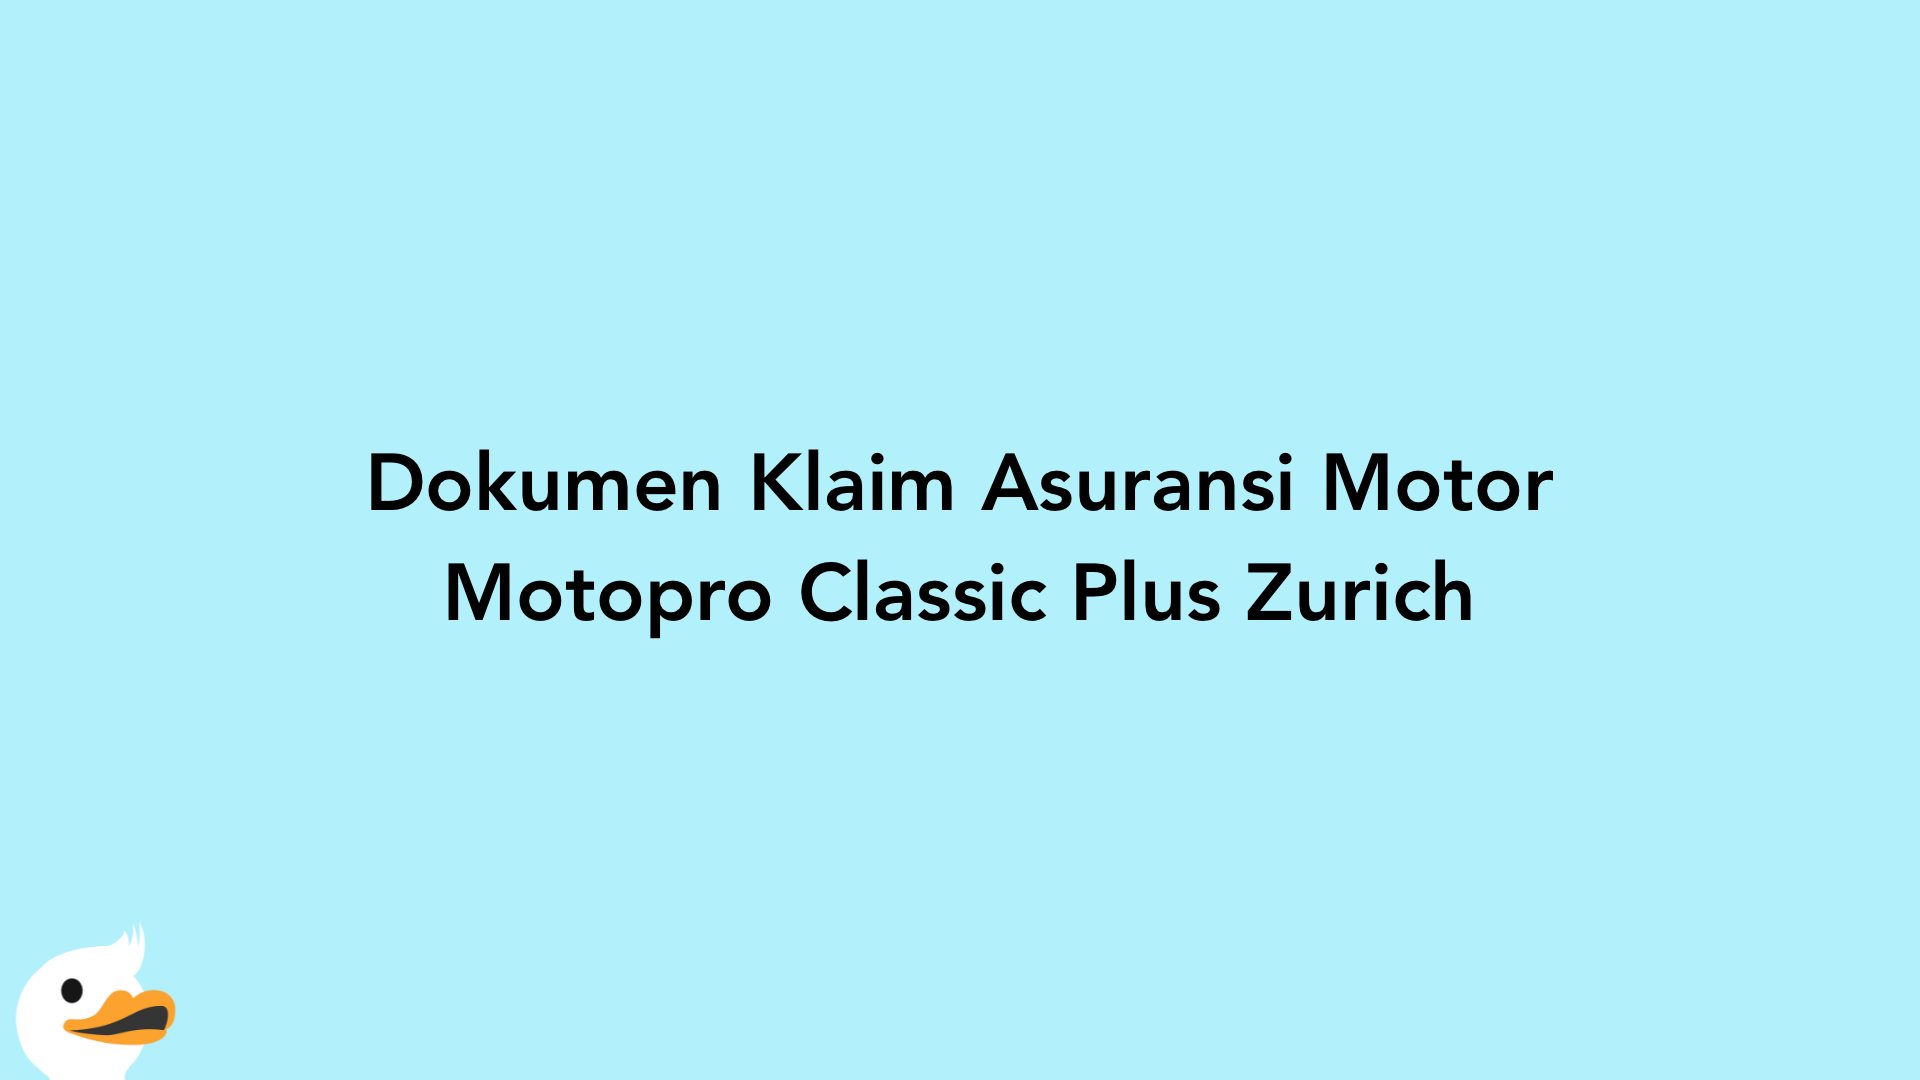 Dokumen Klaim Asuransi Motor Motopro Classic Plus Zurich